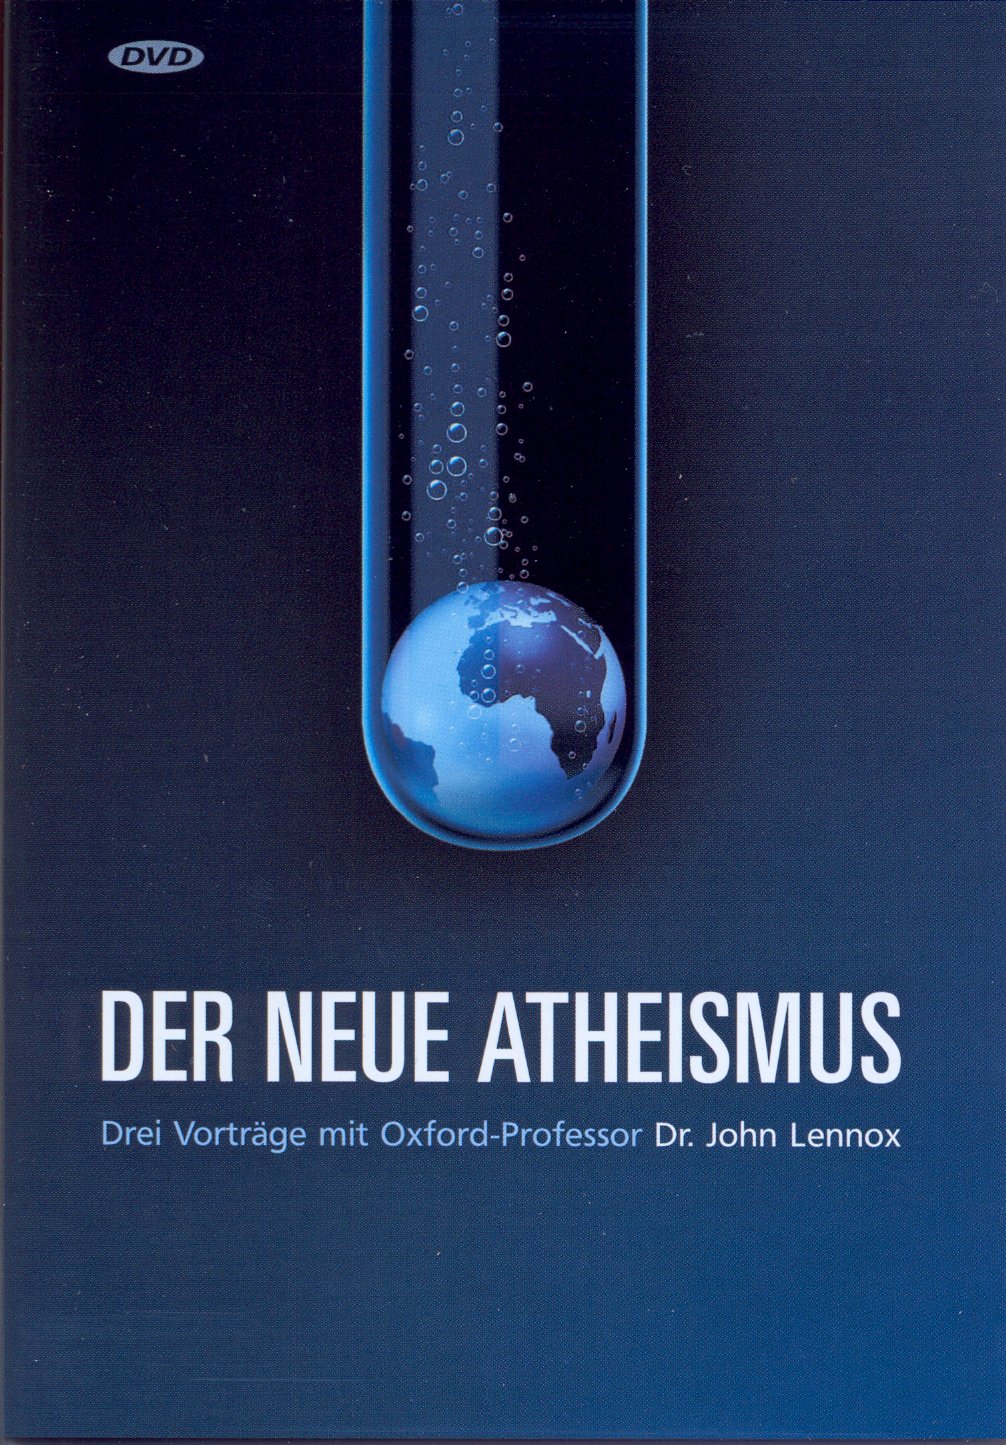 Der neue Atheismus, DVD